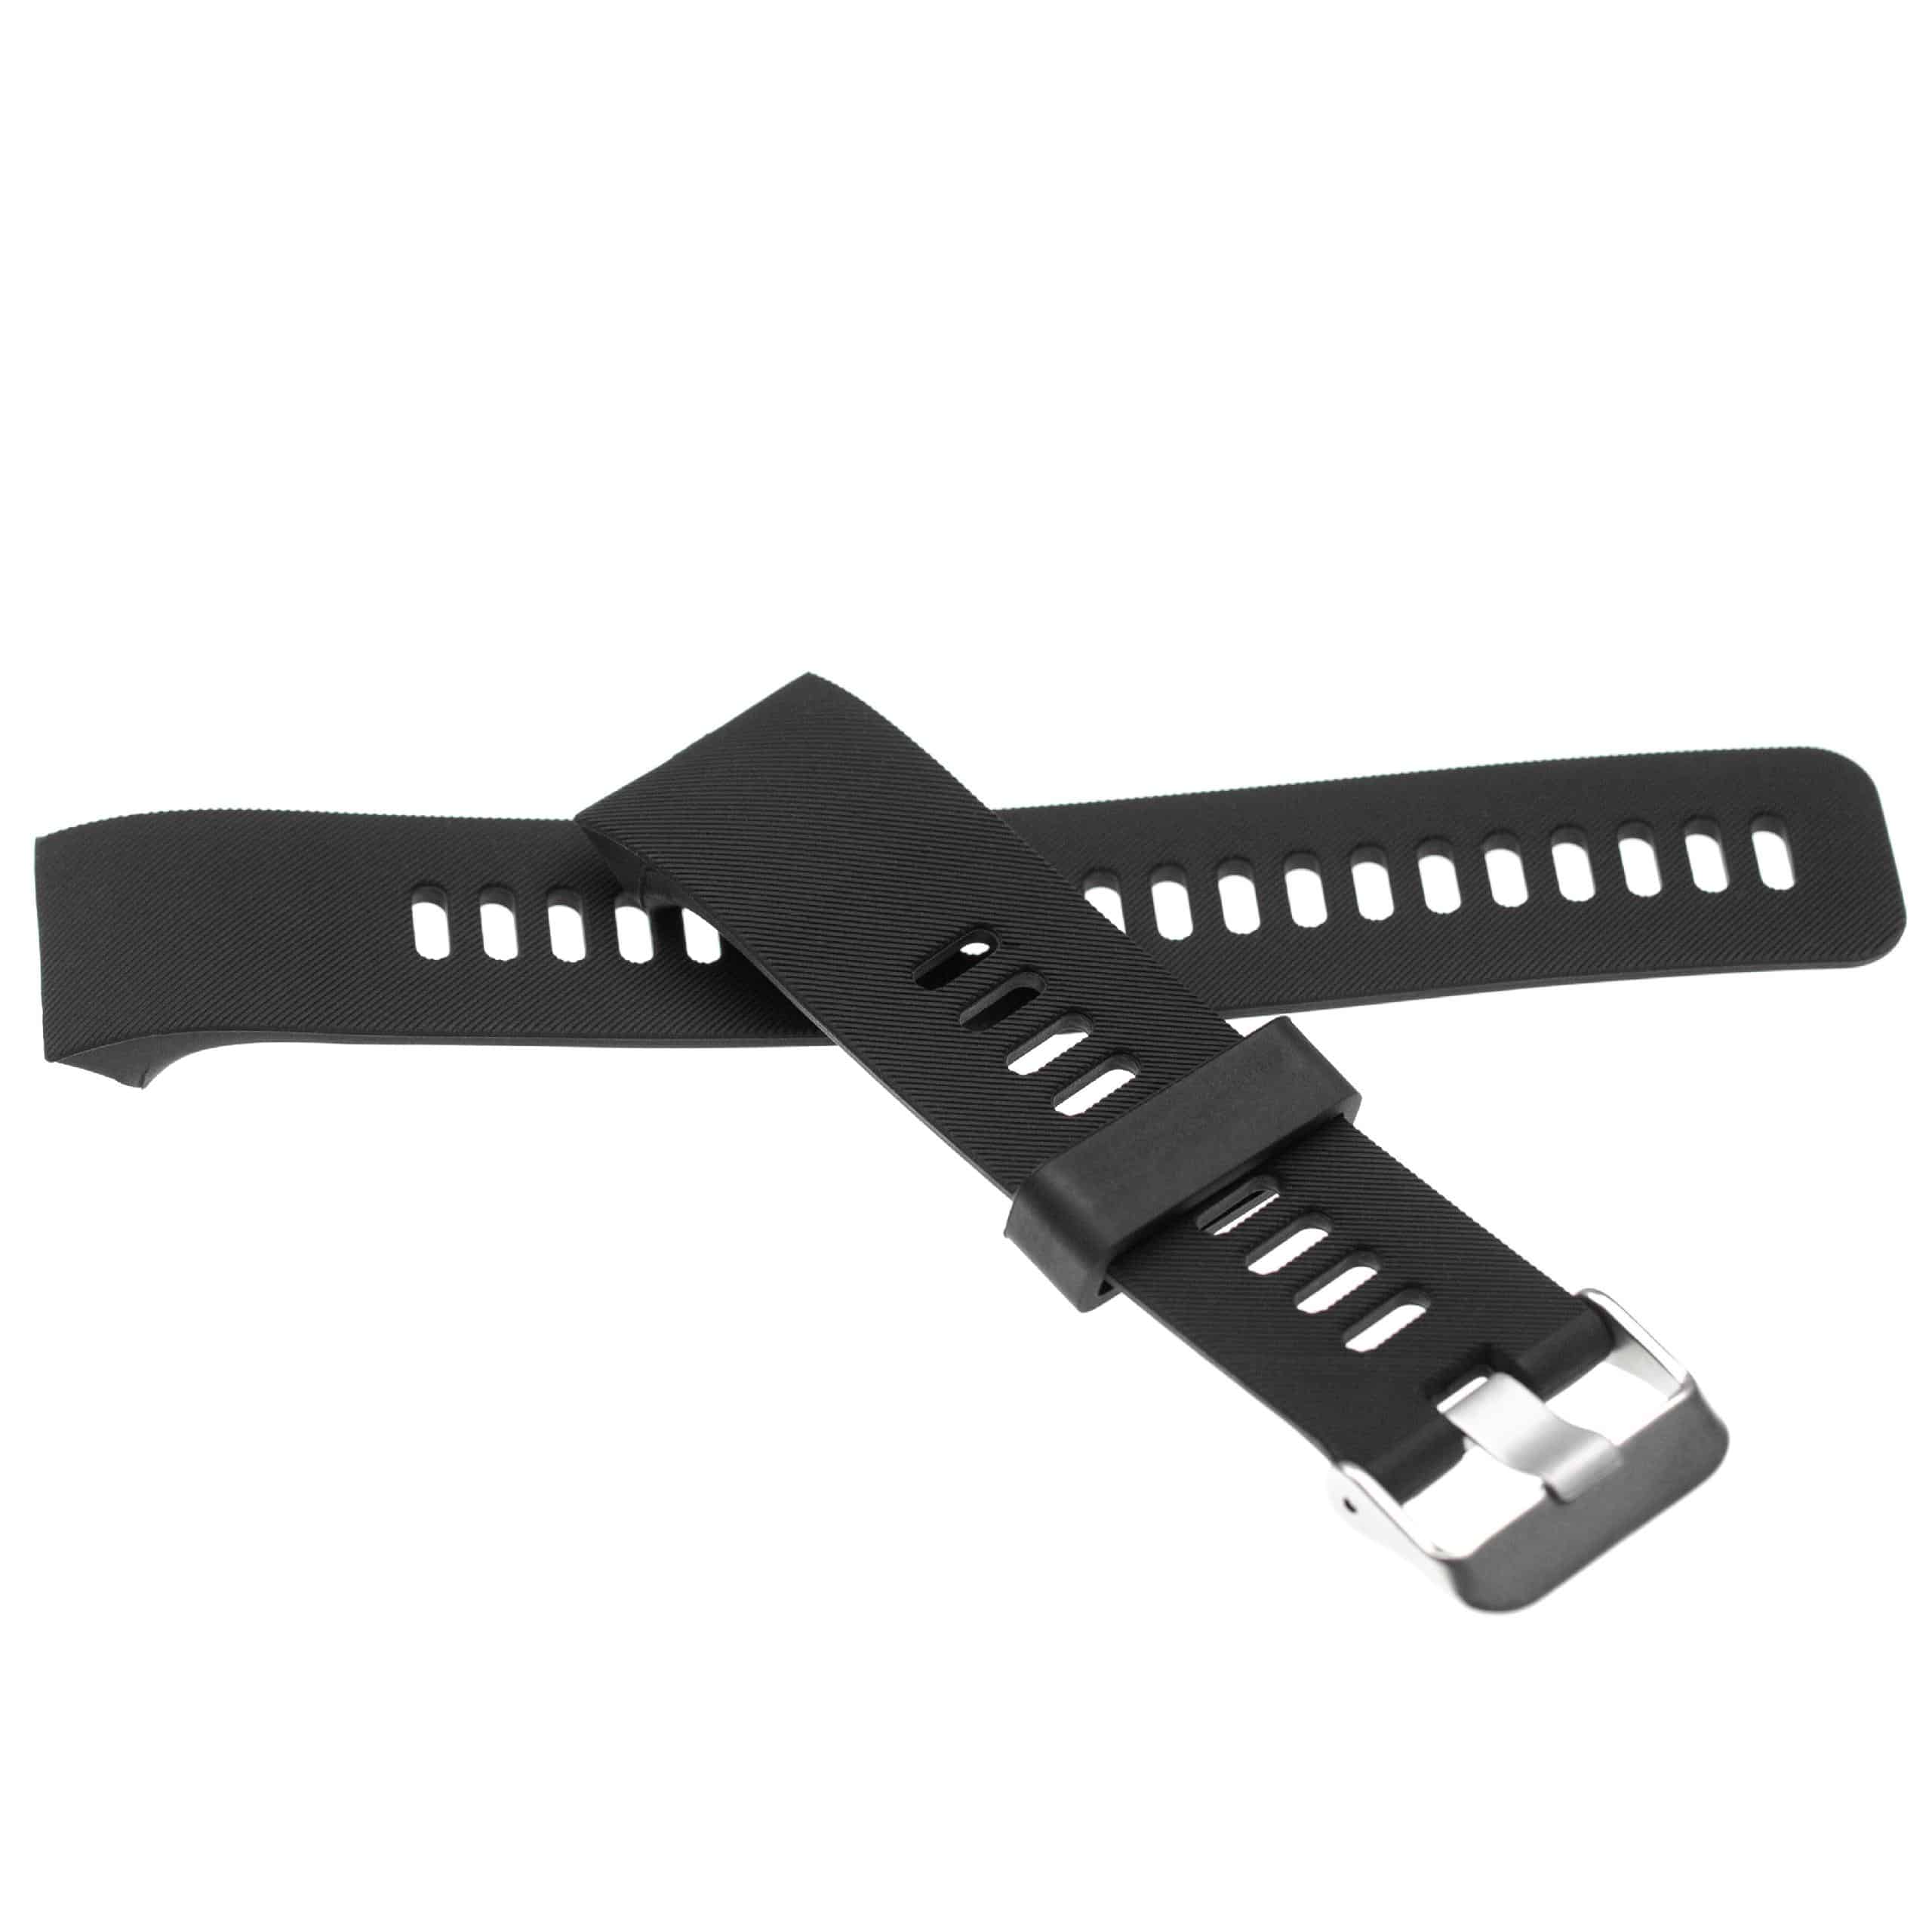 Armband für Garmin Forerunner Smartwatch - 13,5 + 9,4 cm lang, 23mm breit, Silikon, schwarz